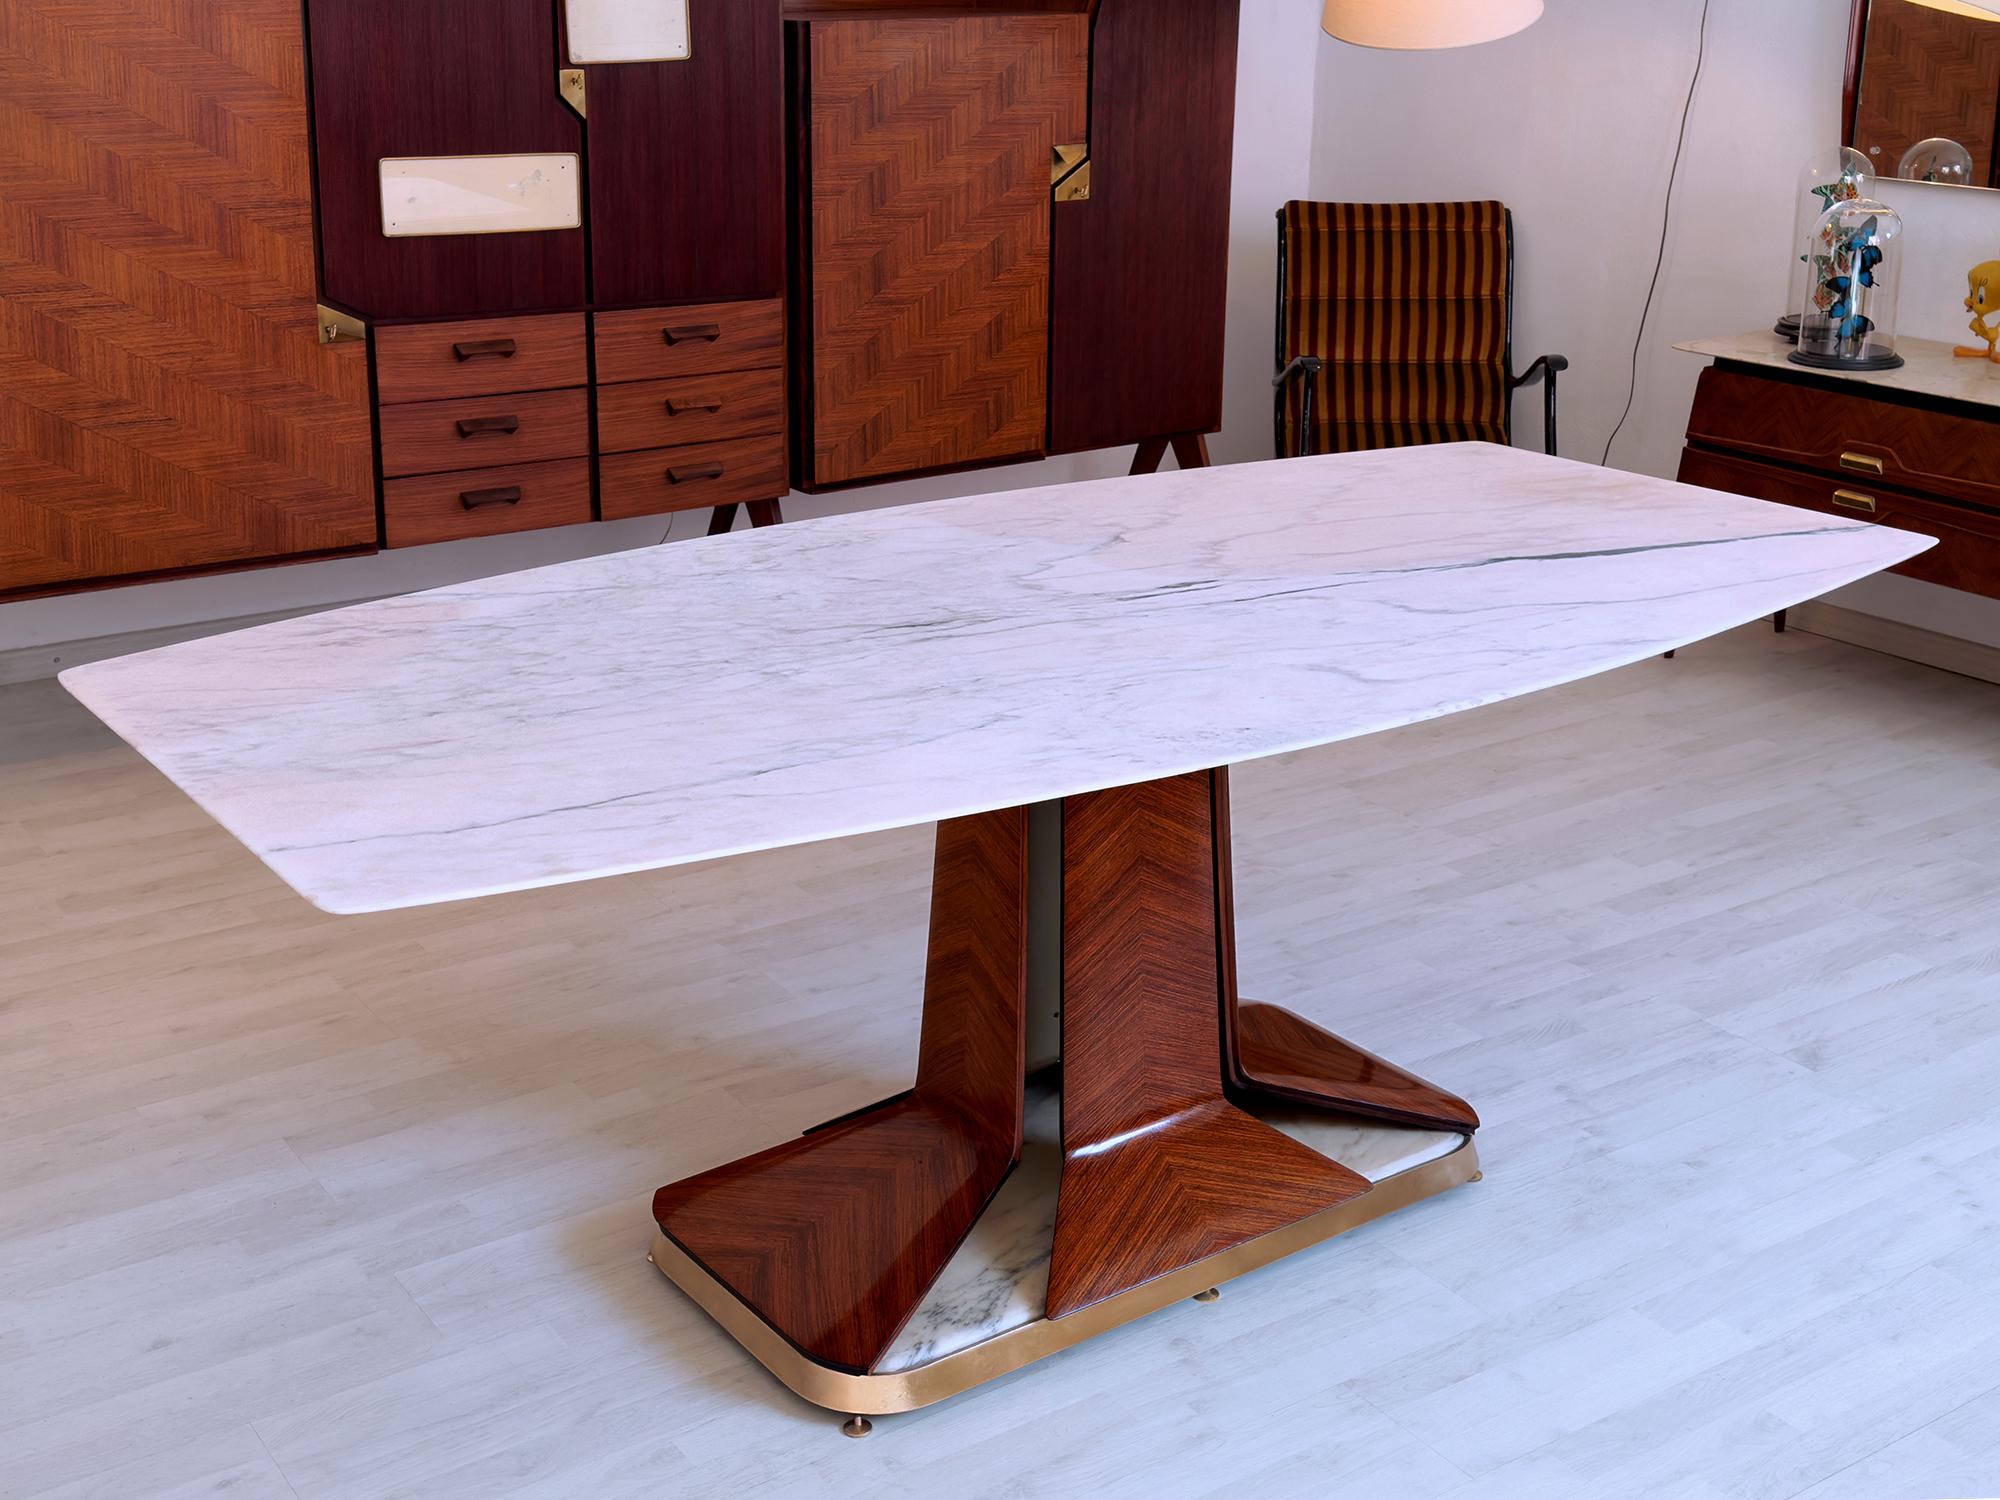 Cette superbe table de salle à manger des années 1950 est attribuable au design de Vittorio Dassi et/ou à la production de La Permanente Mobili Cantù.
Il se caractérise par un plan supérieur en marbre blanc de Carrare à la forme sculpturale unique,